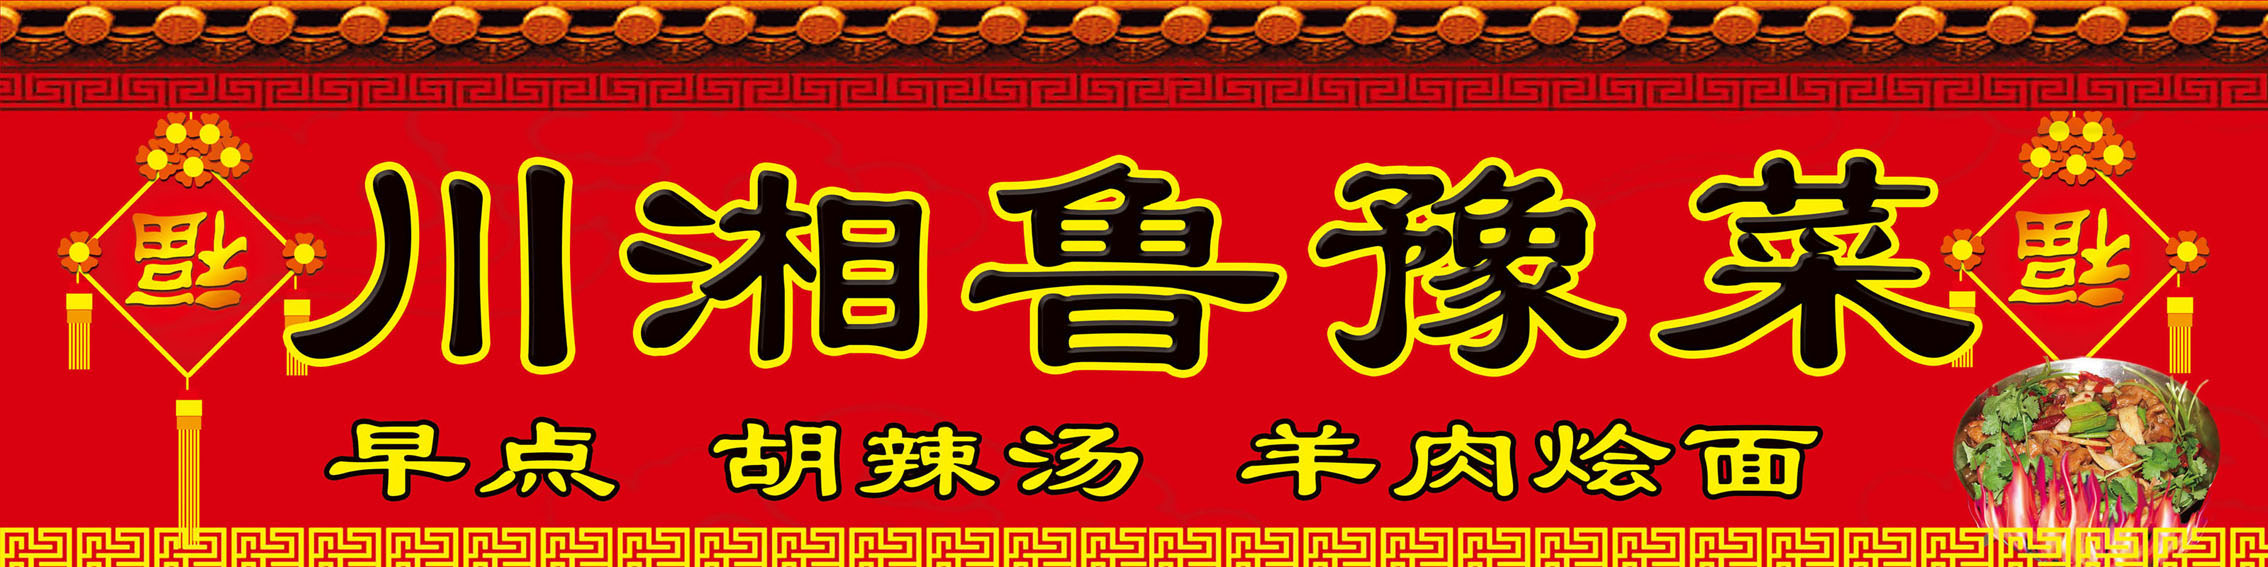 721海报印制展板写真喷绘贴纸430川湘菜馆门头招牌